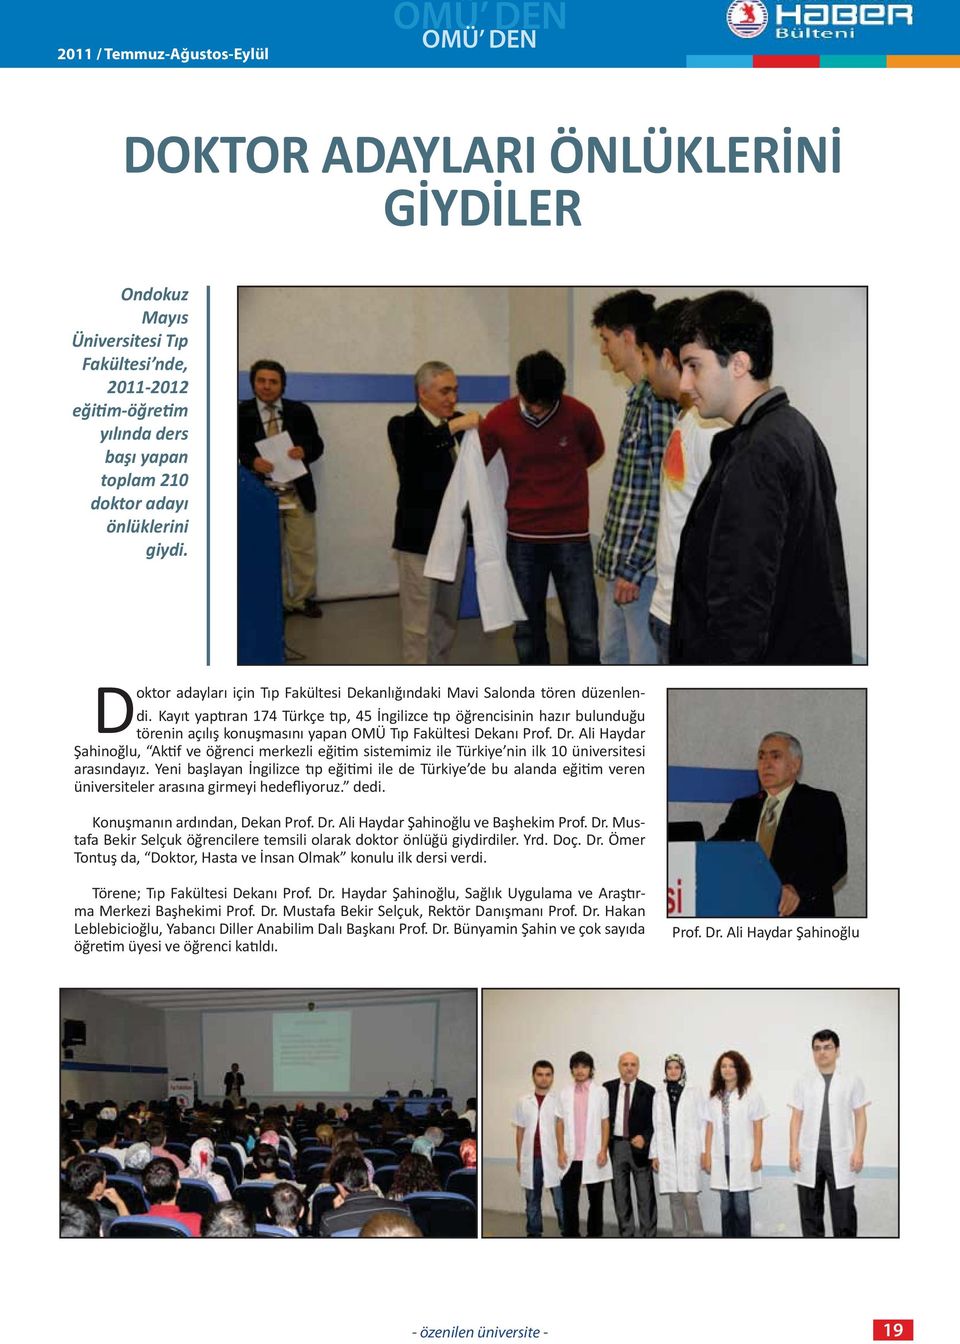 Kayıt yap ran 174 Türkçe p, 45 İngilizce p öğrencisinin hazır bulunduğu törenin açılış konuşmasını yapan OMÜ Tıp Fakültesi Dekanı Prof. Dr.